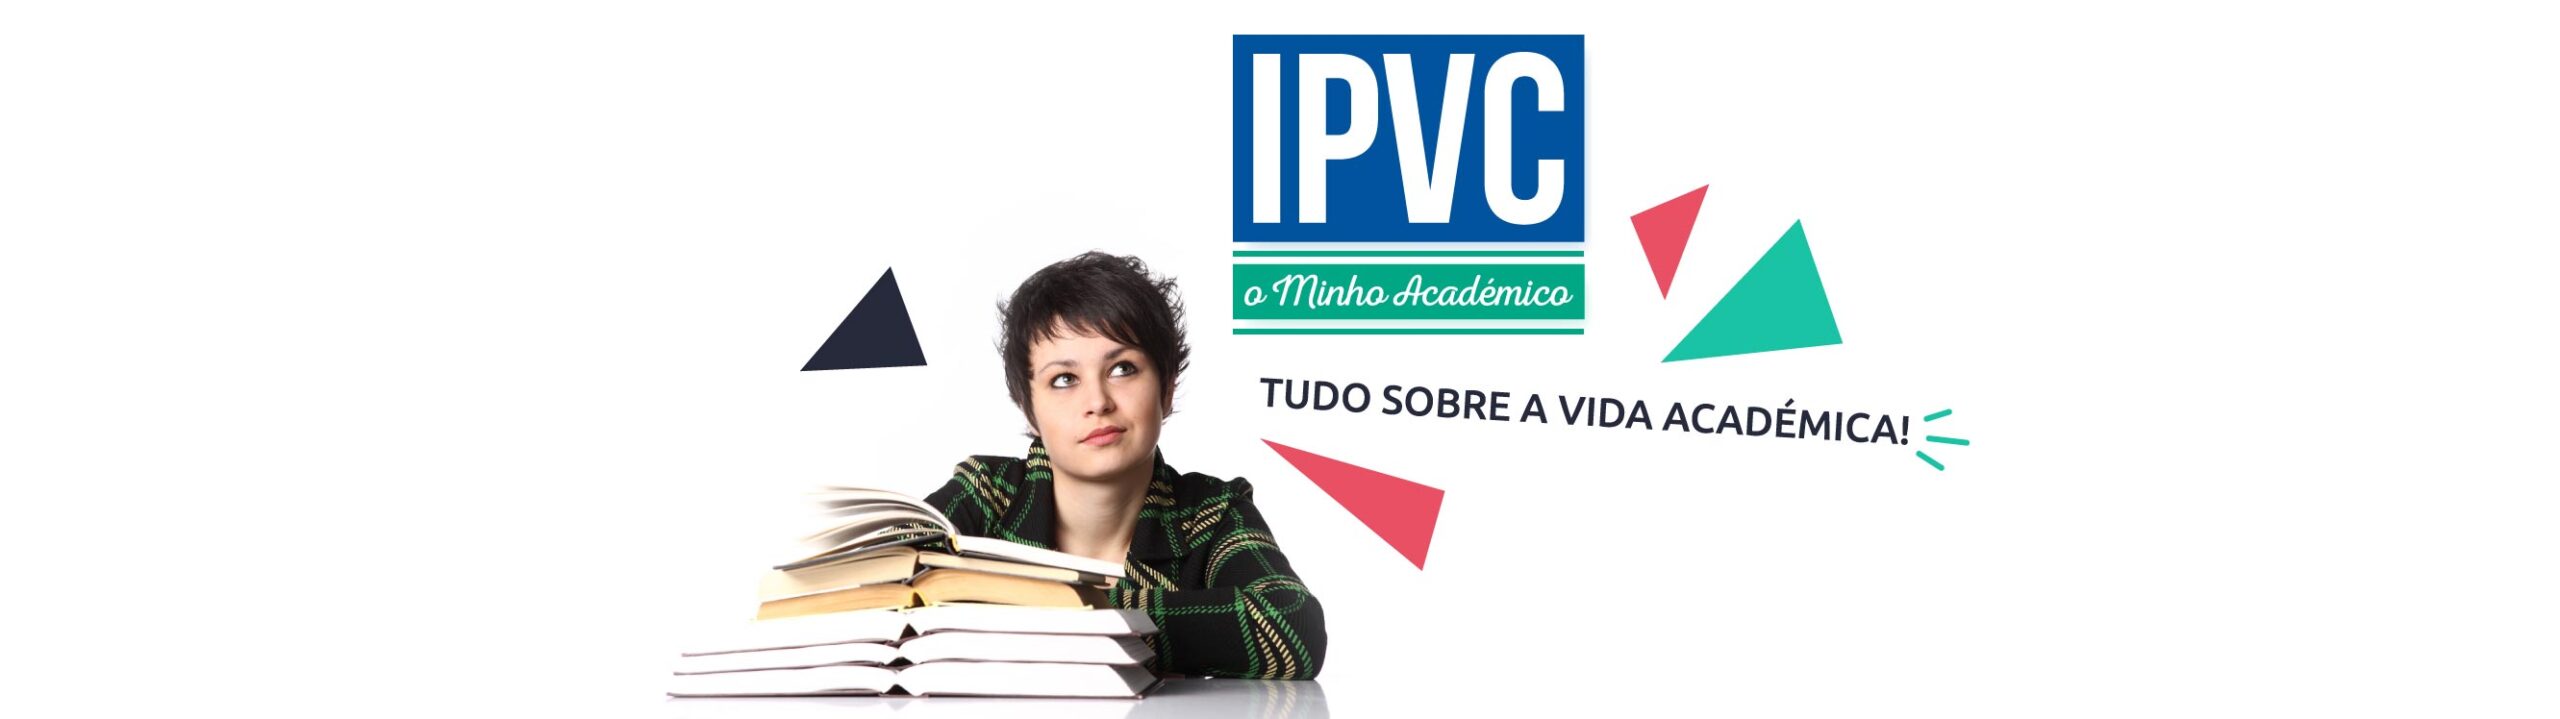 IPVC – O Minho Académico (Ed. 038)